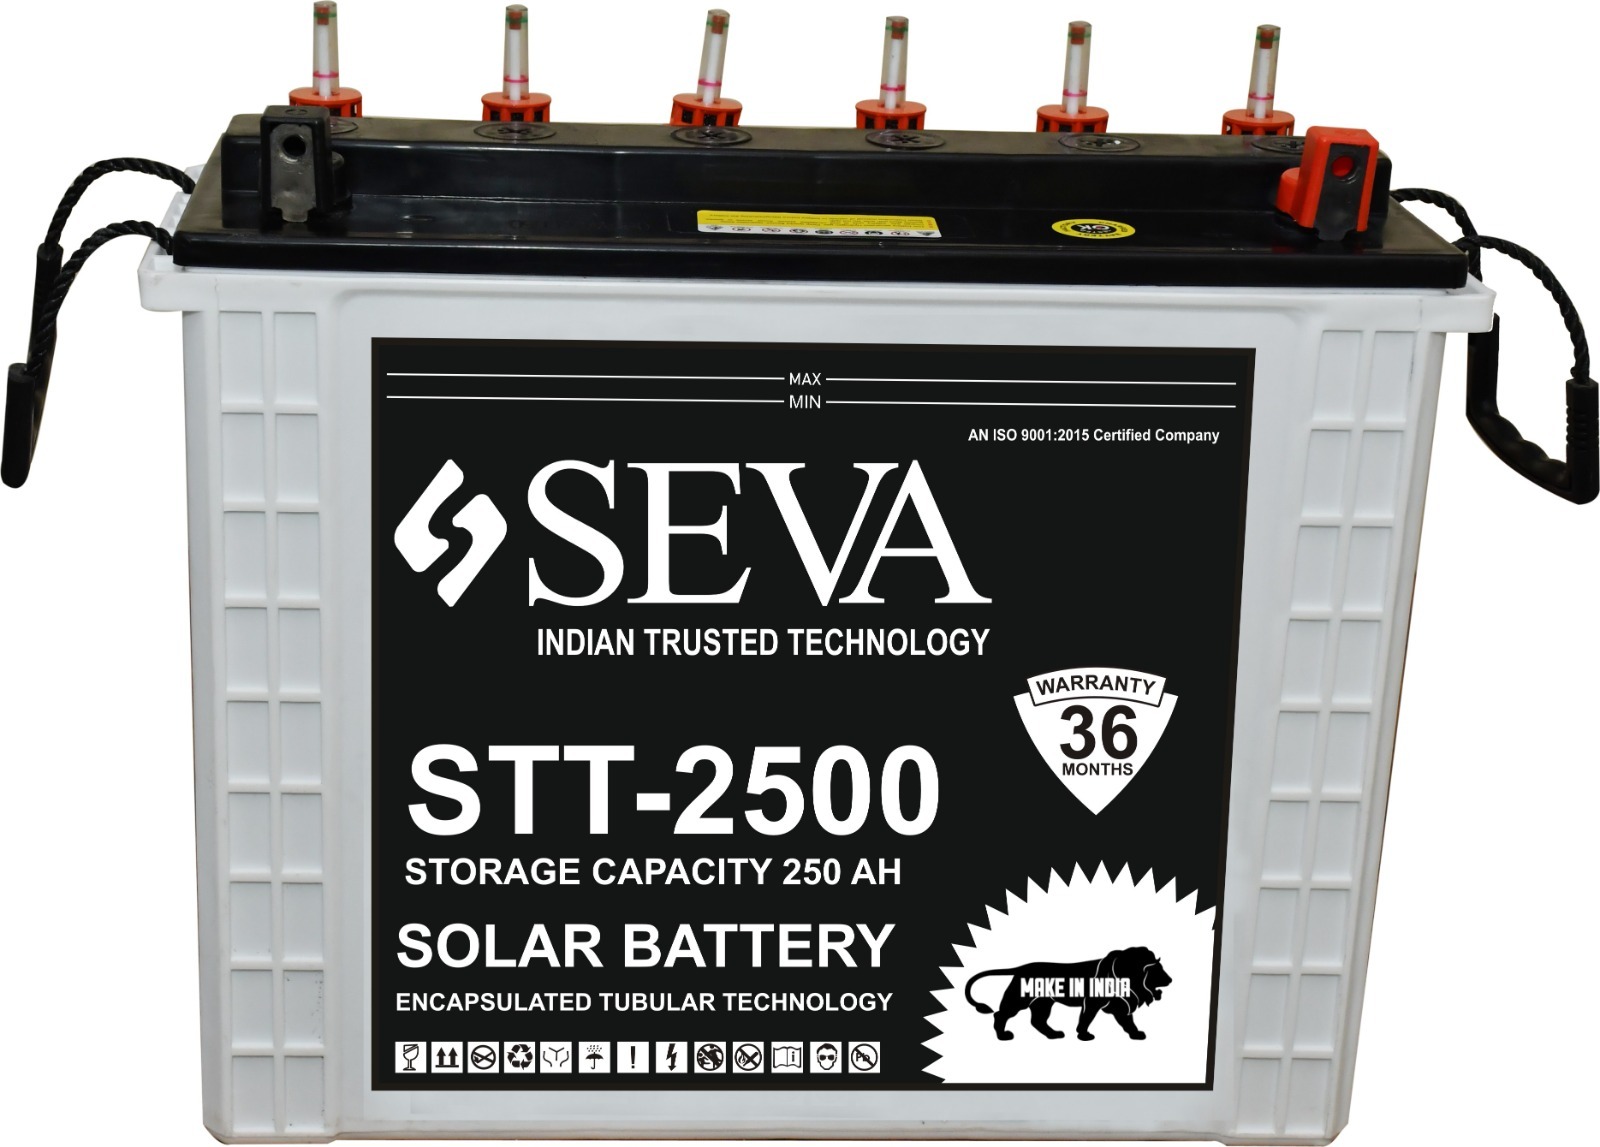 STT-2500 SOLAR BATTERY